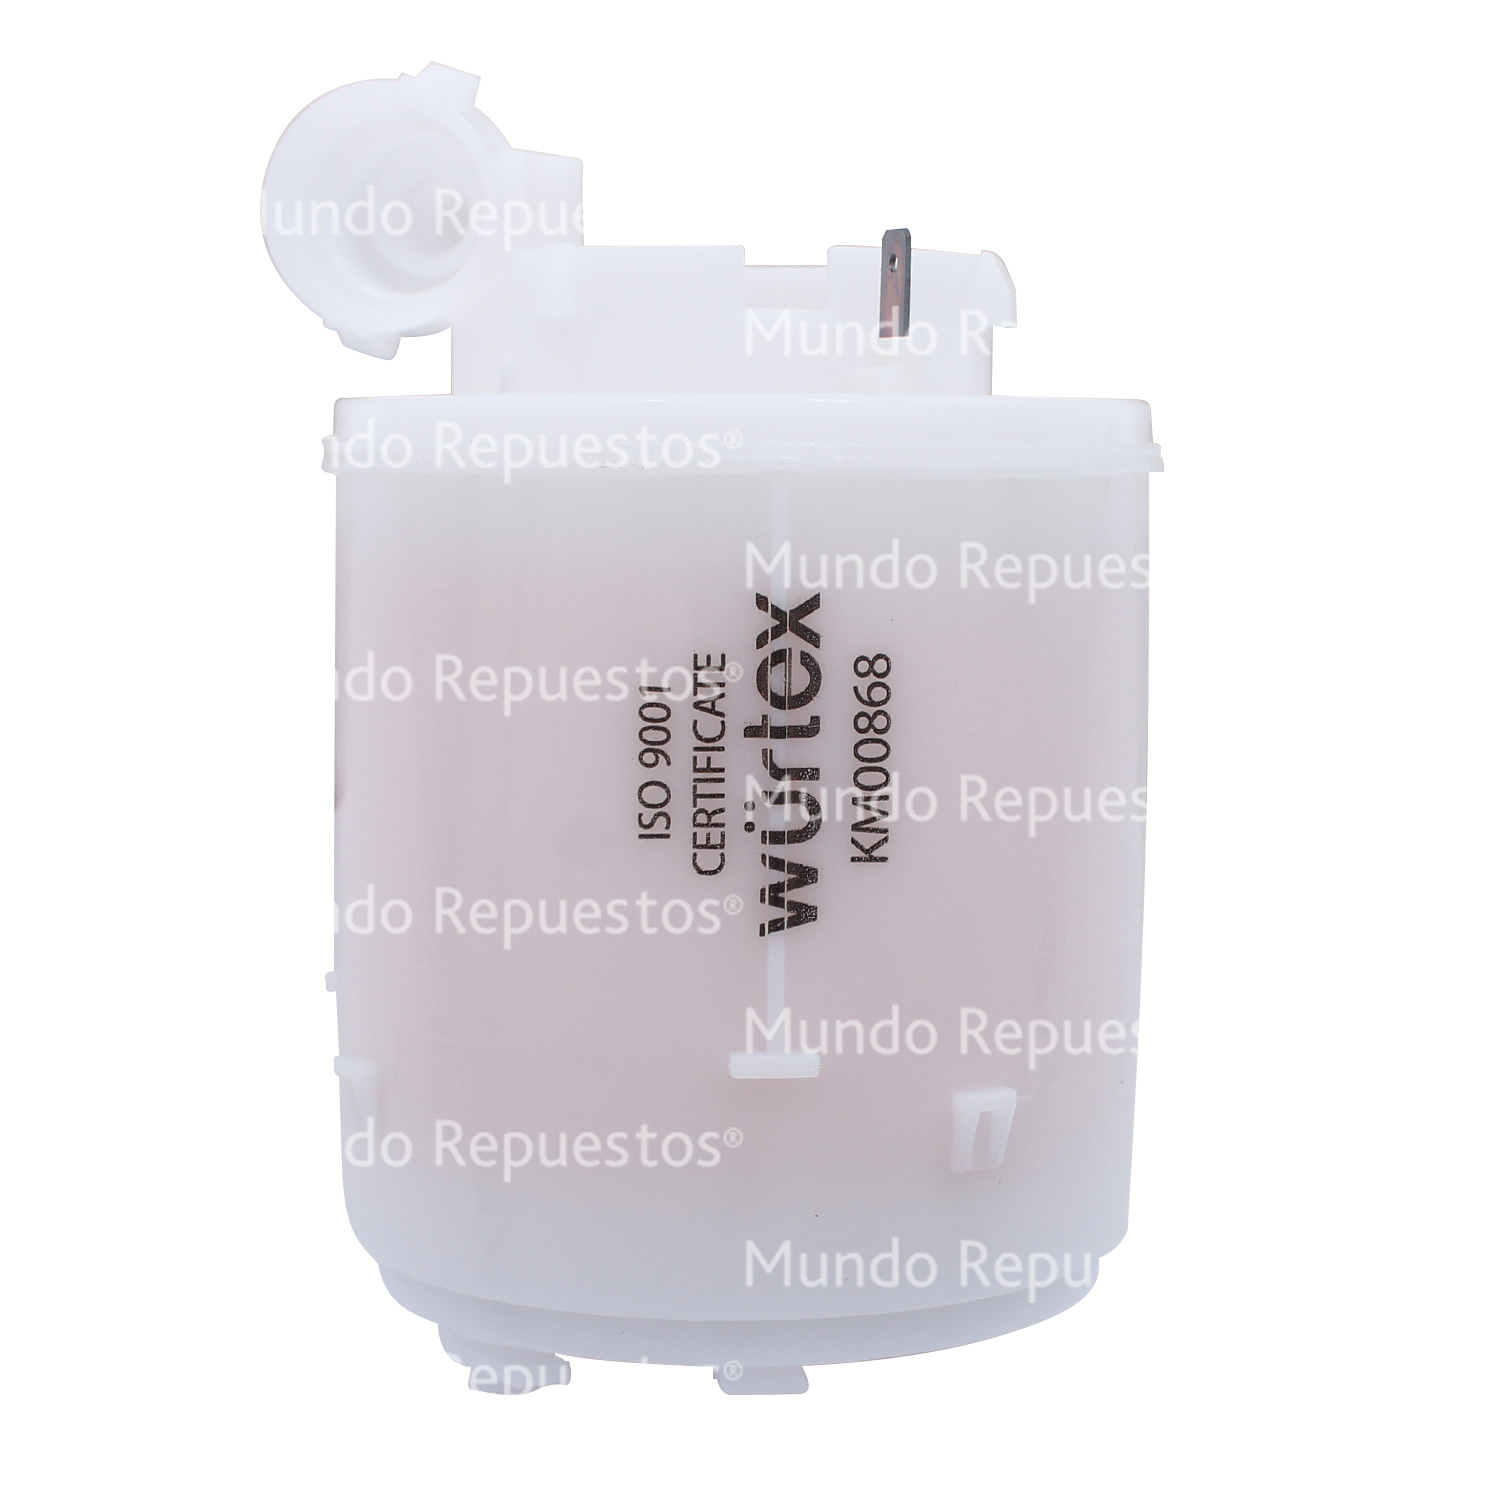 Filtro bencina  marca Wurtex disponible en Mundo Repuestos